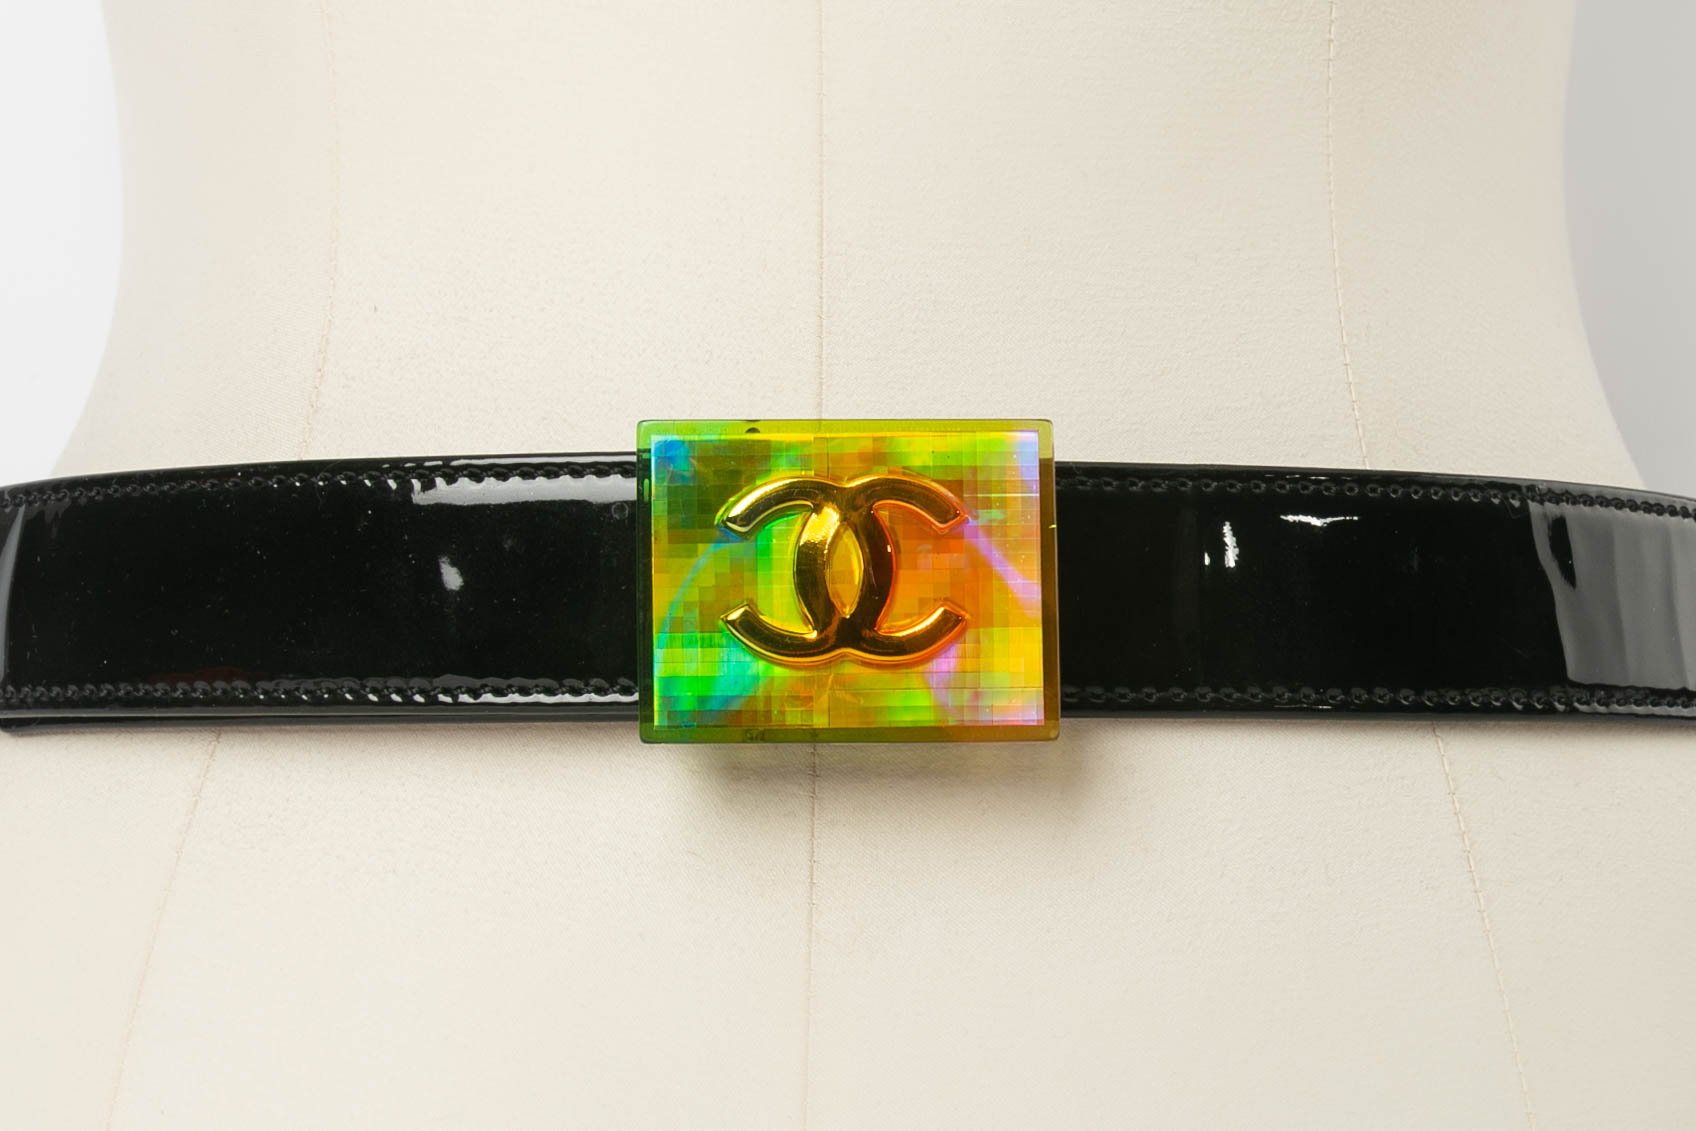 Chanel charms belt, 2004 Fall Collection – Les Merveilles De Babellou